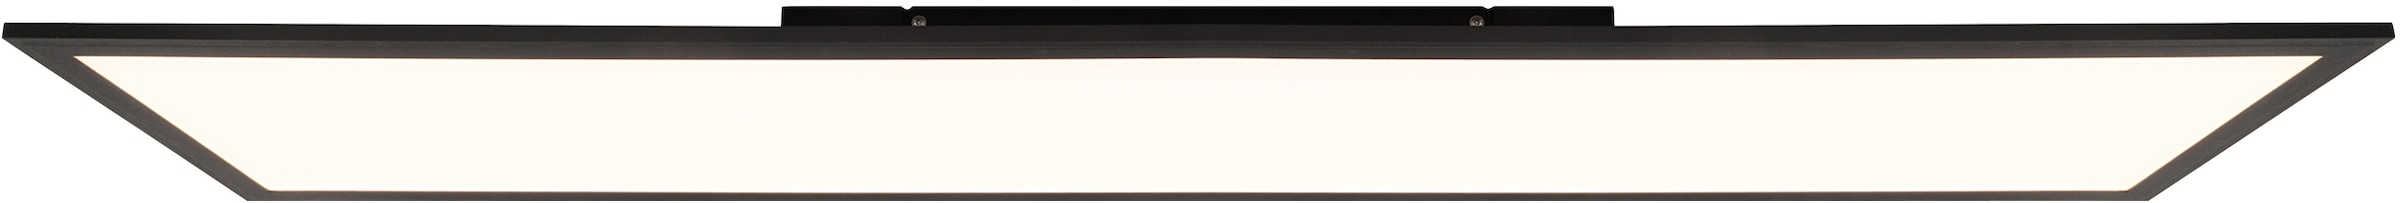 Brilliant Leuchten LED Panel »Abie«, mit RGB Farbwechsel, dimmbar, 120x30 cm, 3800 Lumen, Farbtemperatur 2700-6500 Kelvin einstellbar, inkl. Fernbedienung